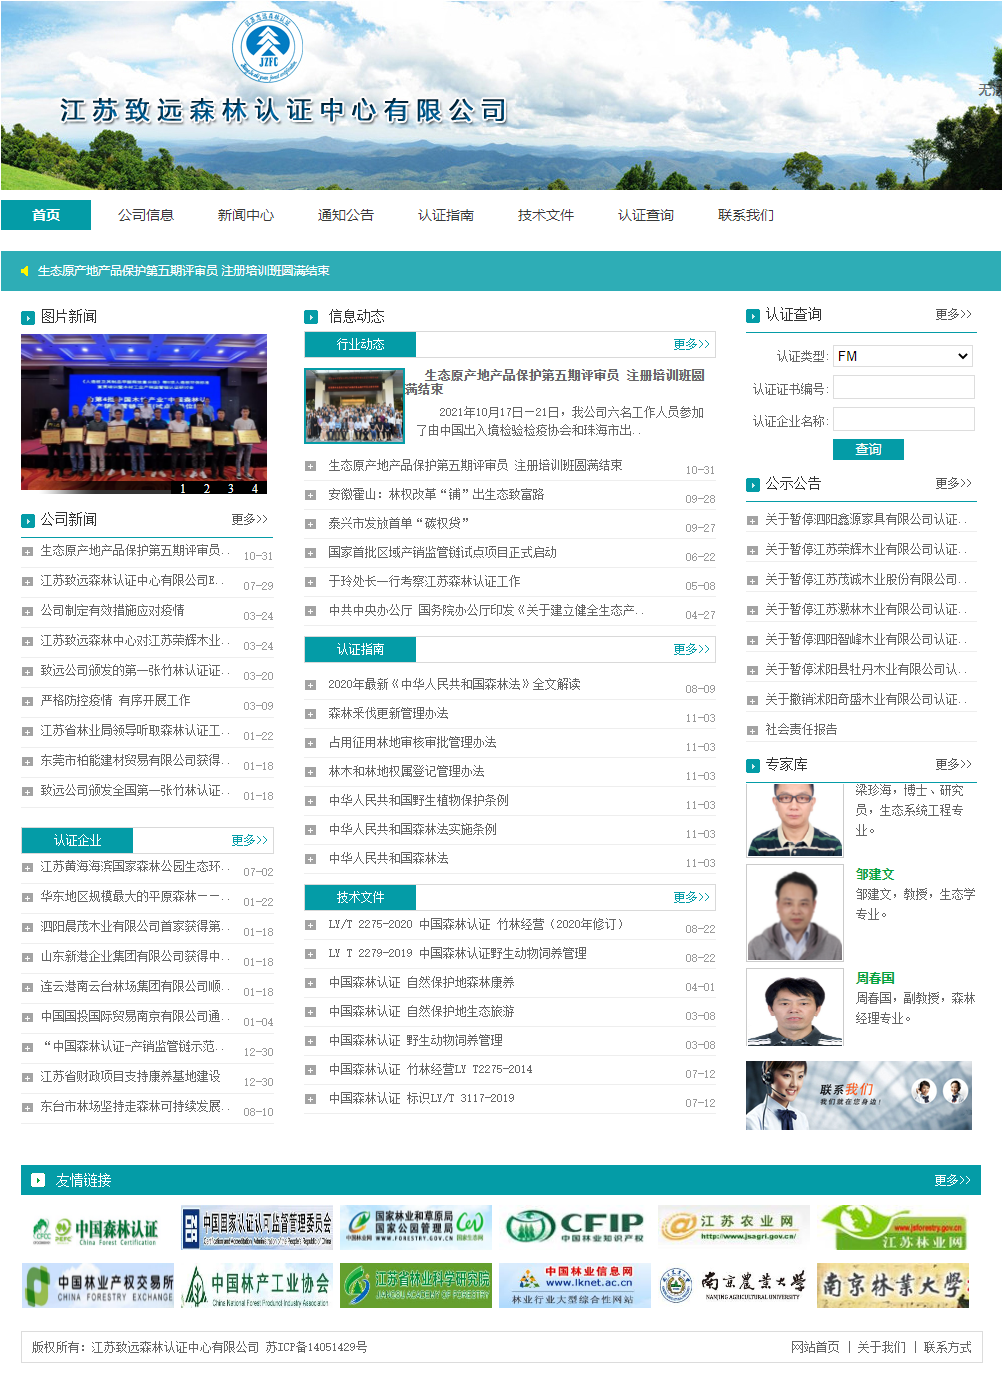 江苏致远森林认证中心有限公司网站案例